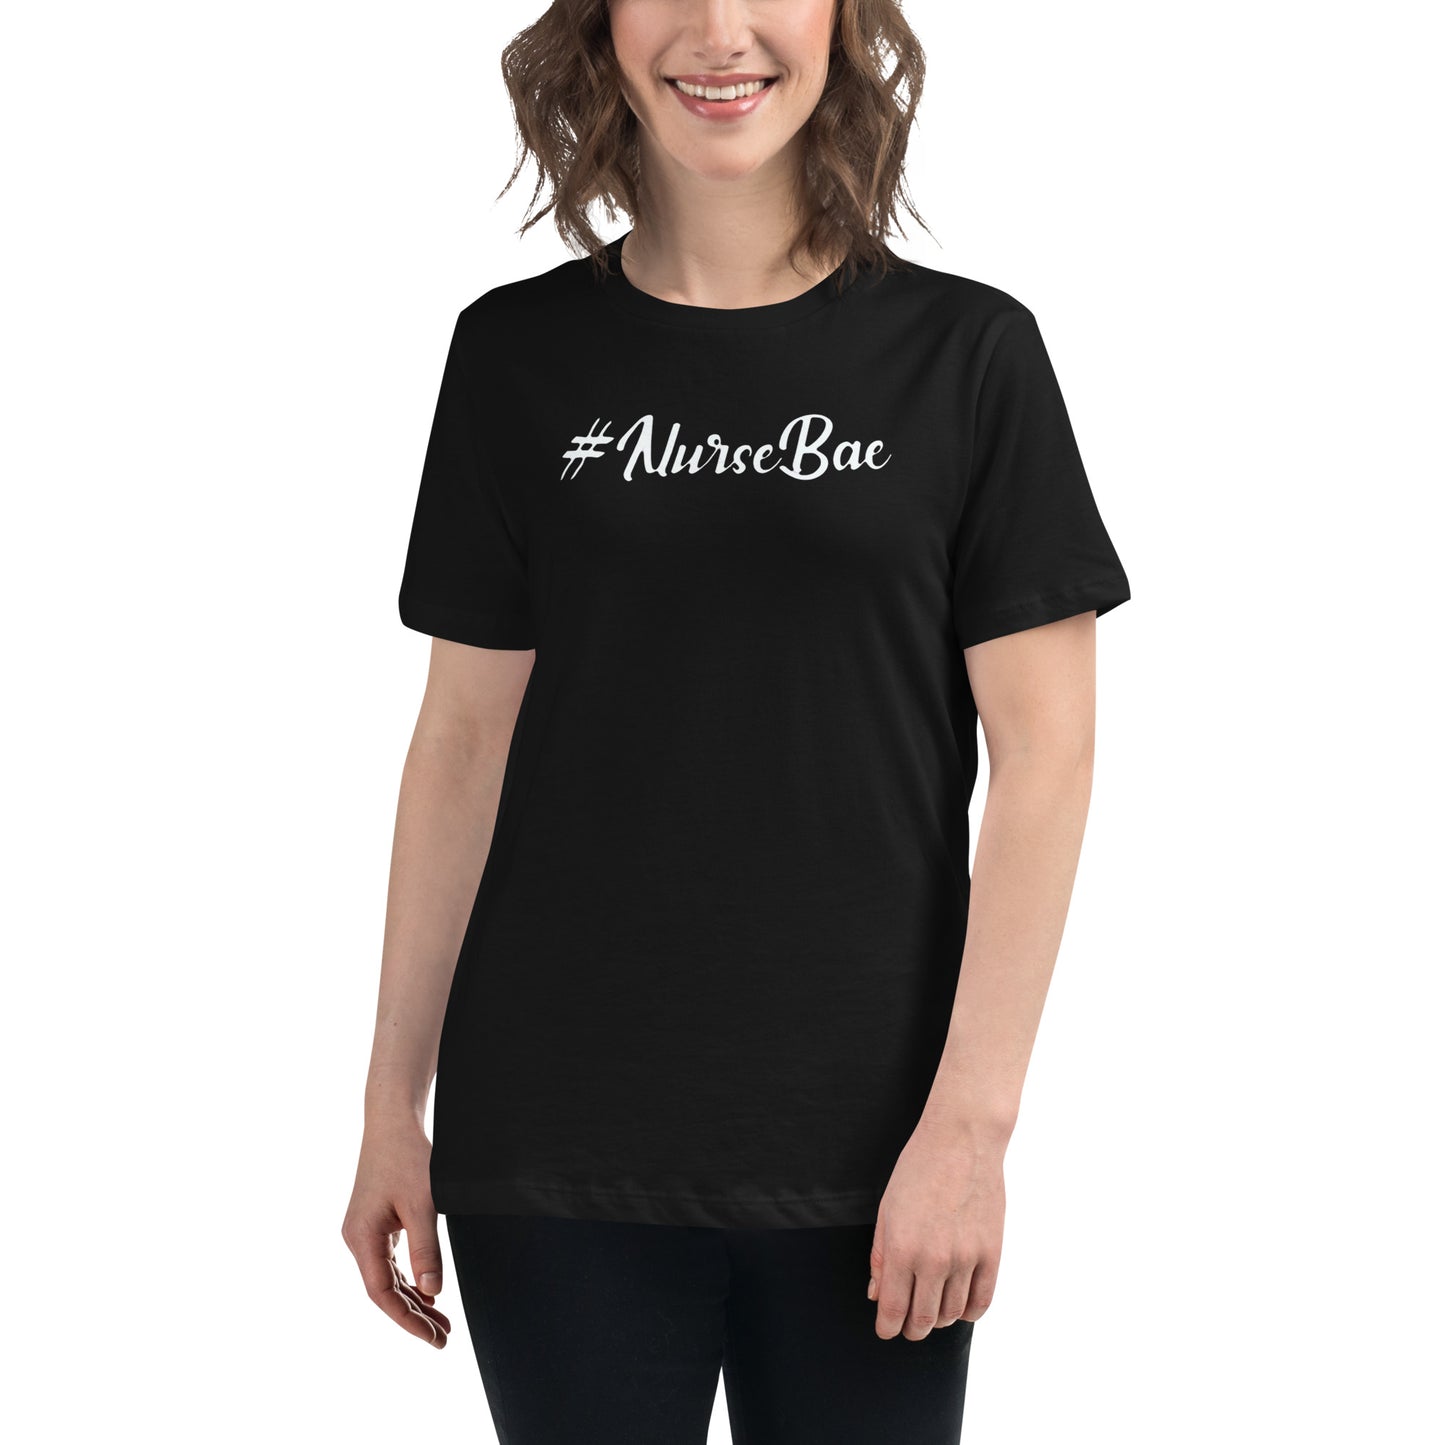 #NurseBae Women's Short Sleeve T-shirt